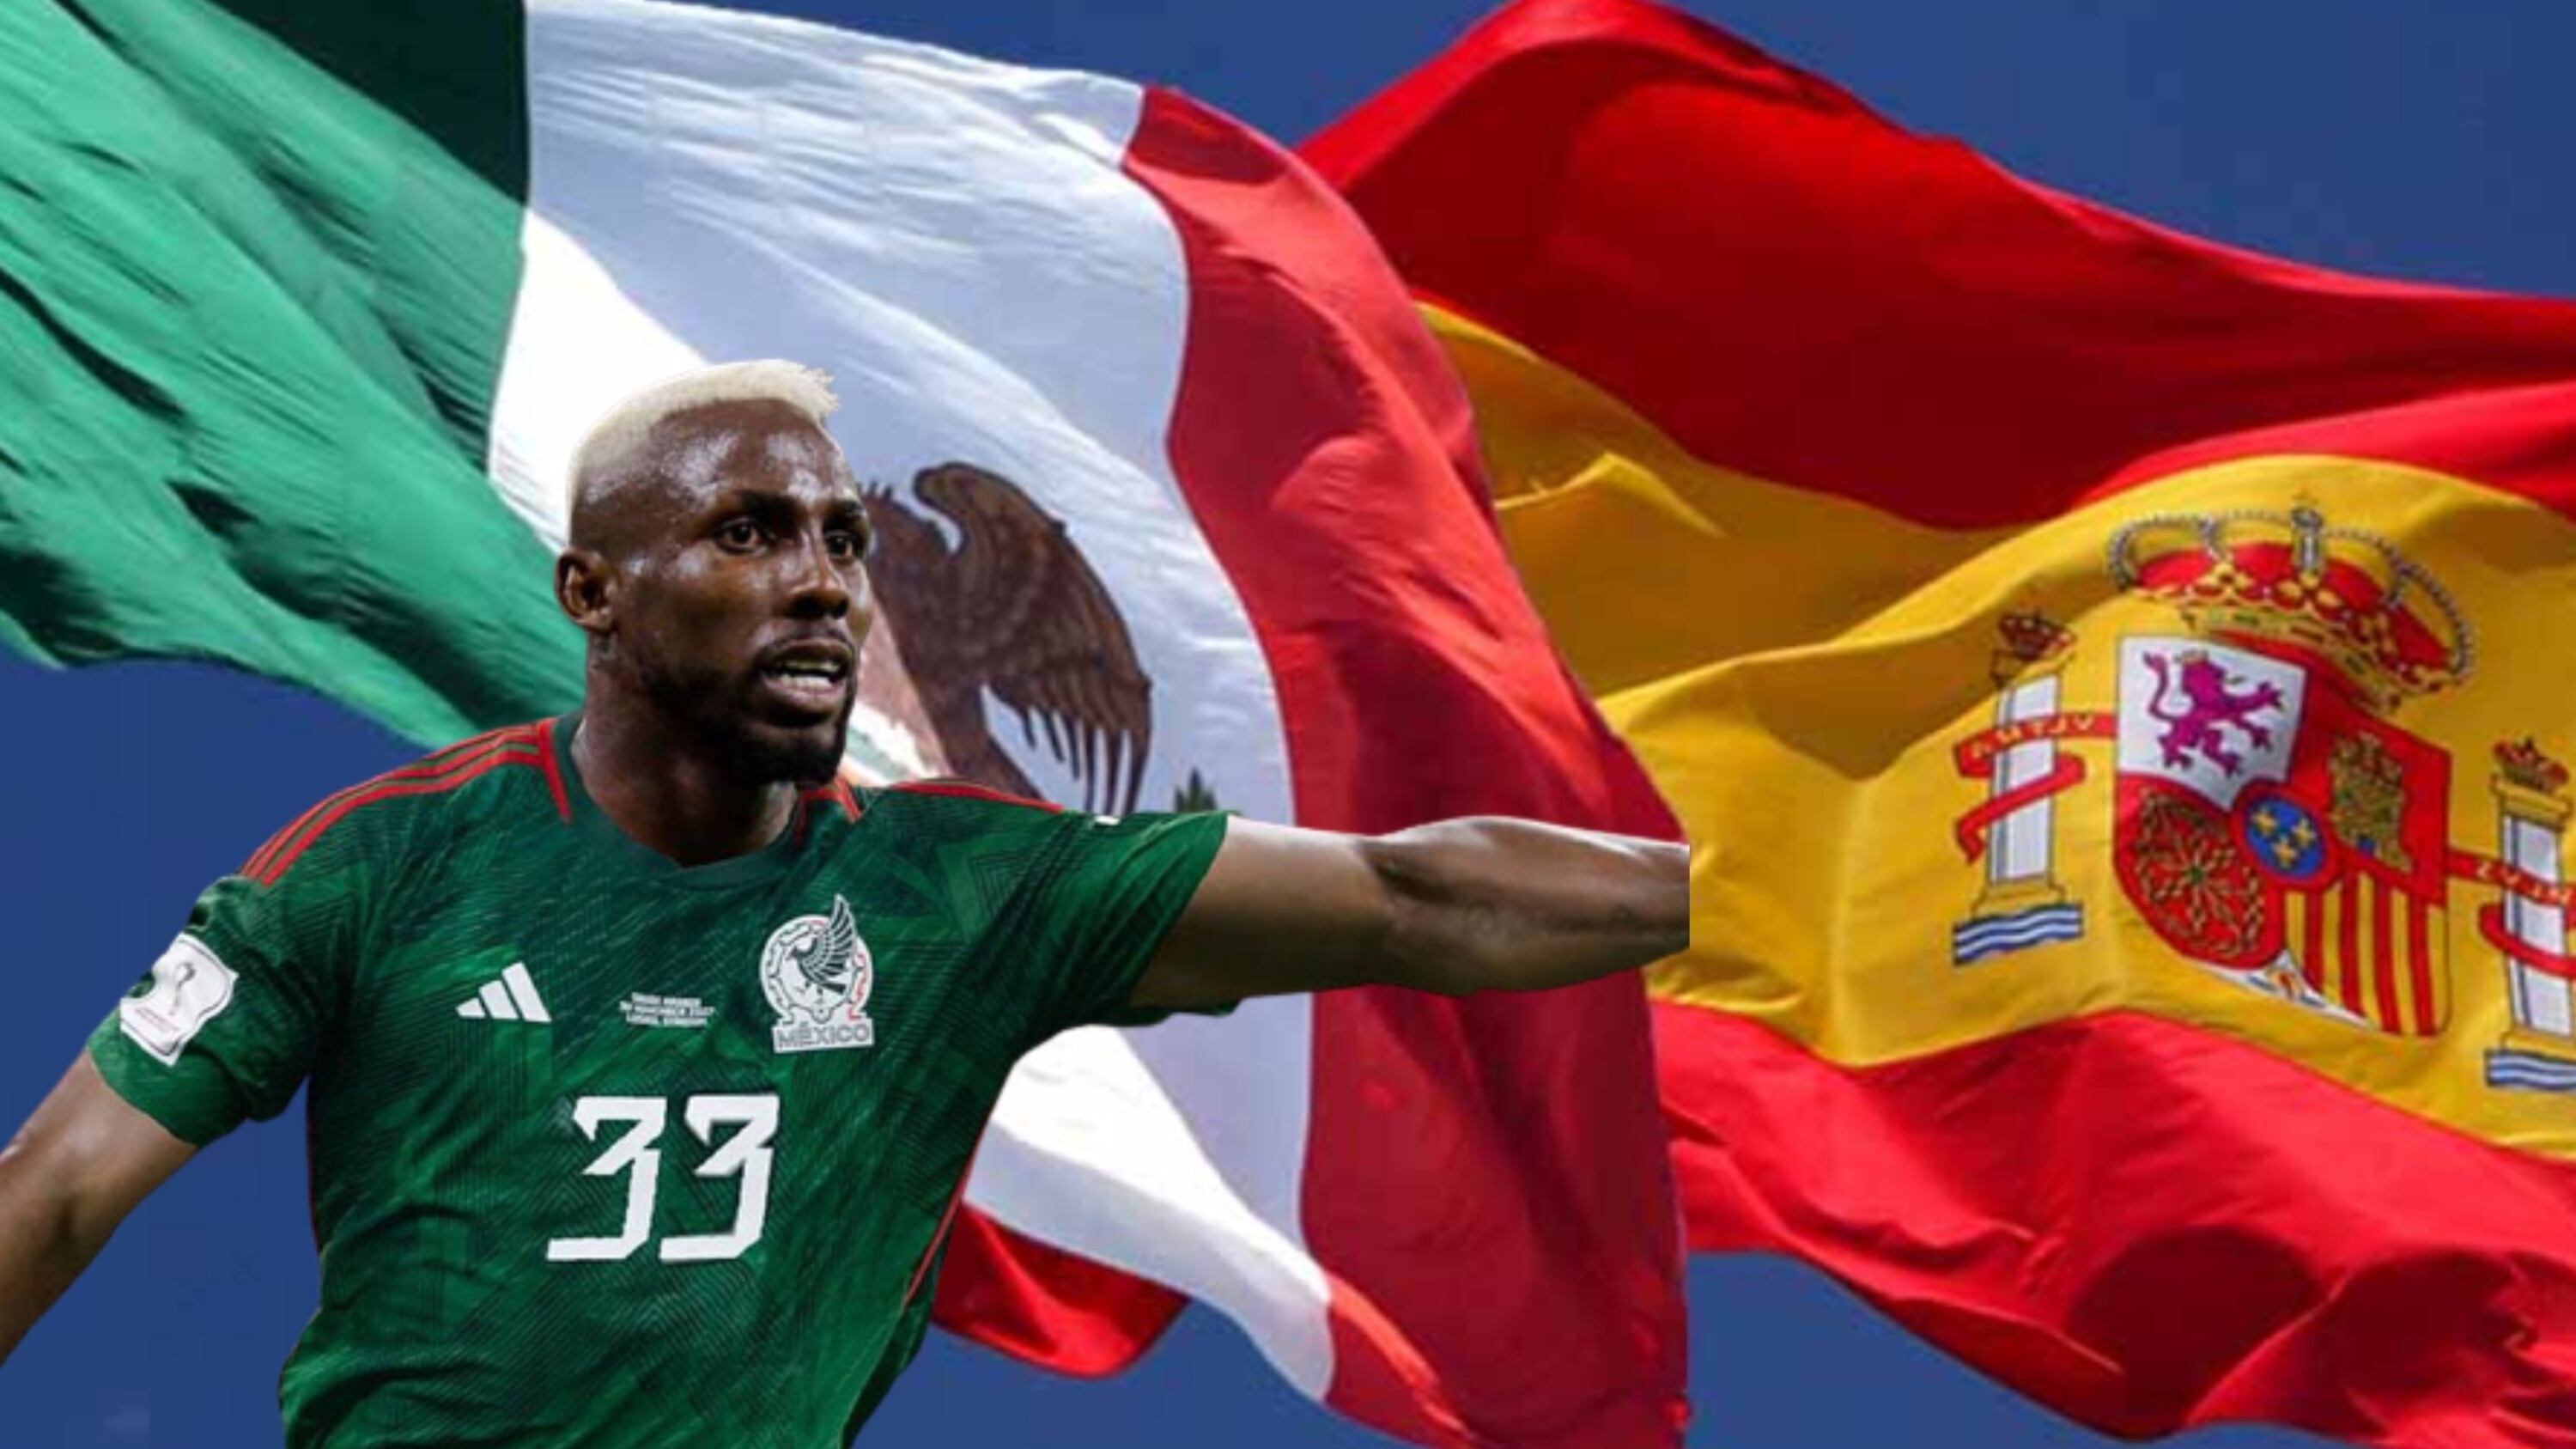 En lugar de llamar a Quiñones, el mexicano español que ya hizo gol en Europa